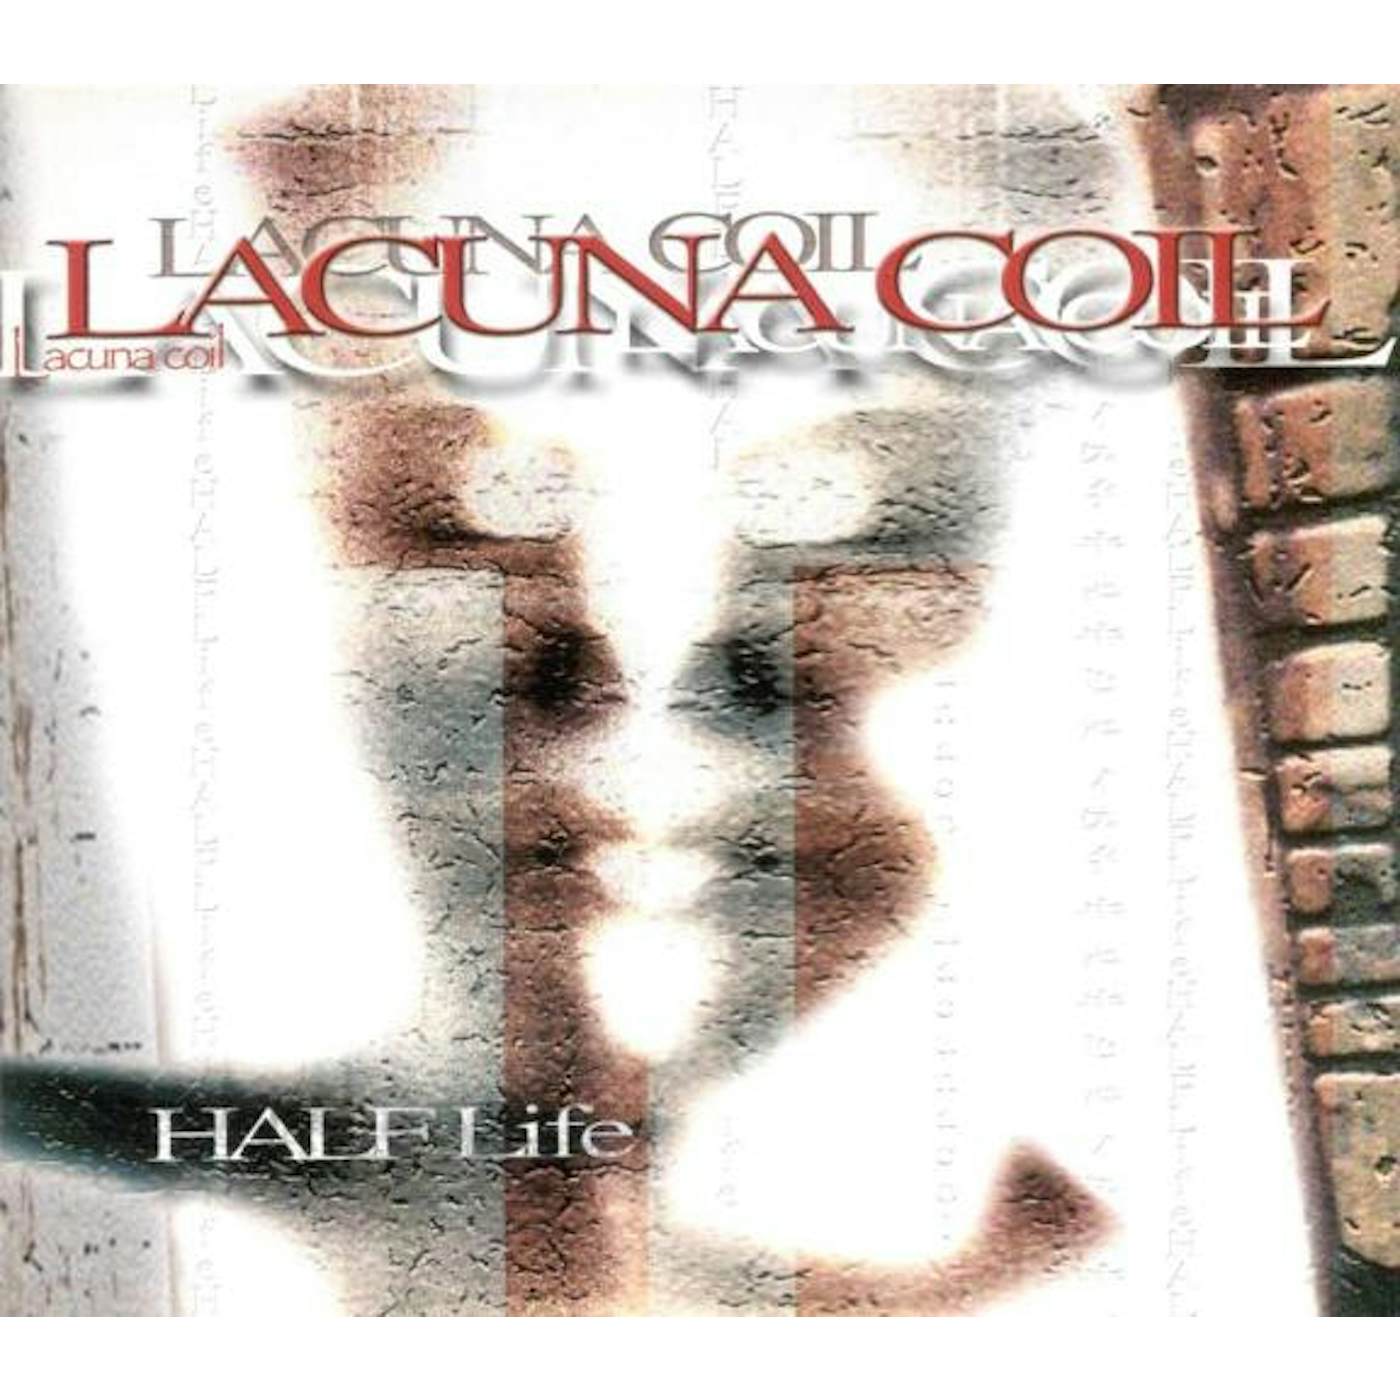 Lacuna Coil Halflife Vinyl Record